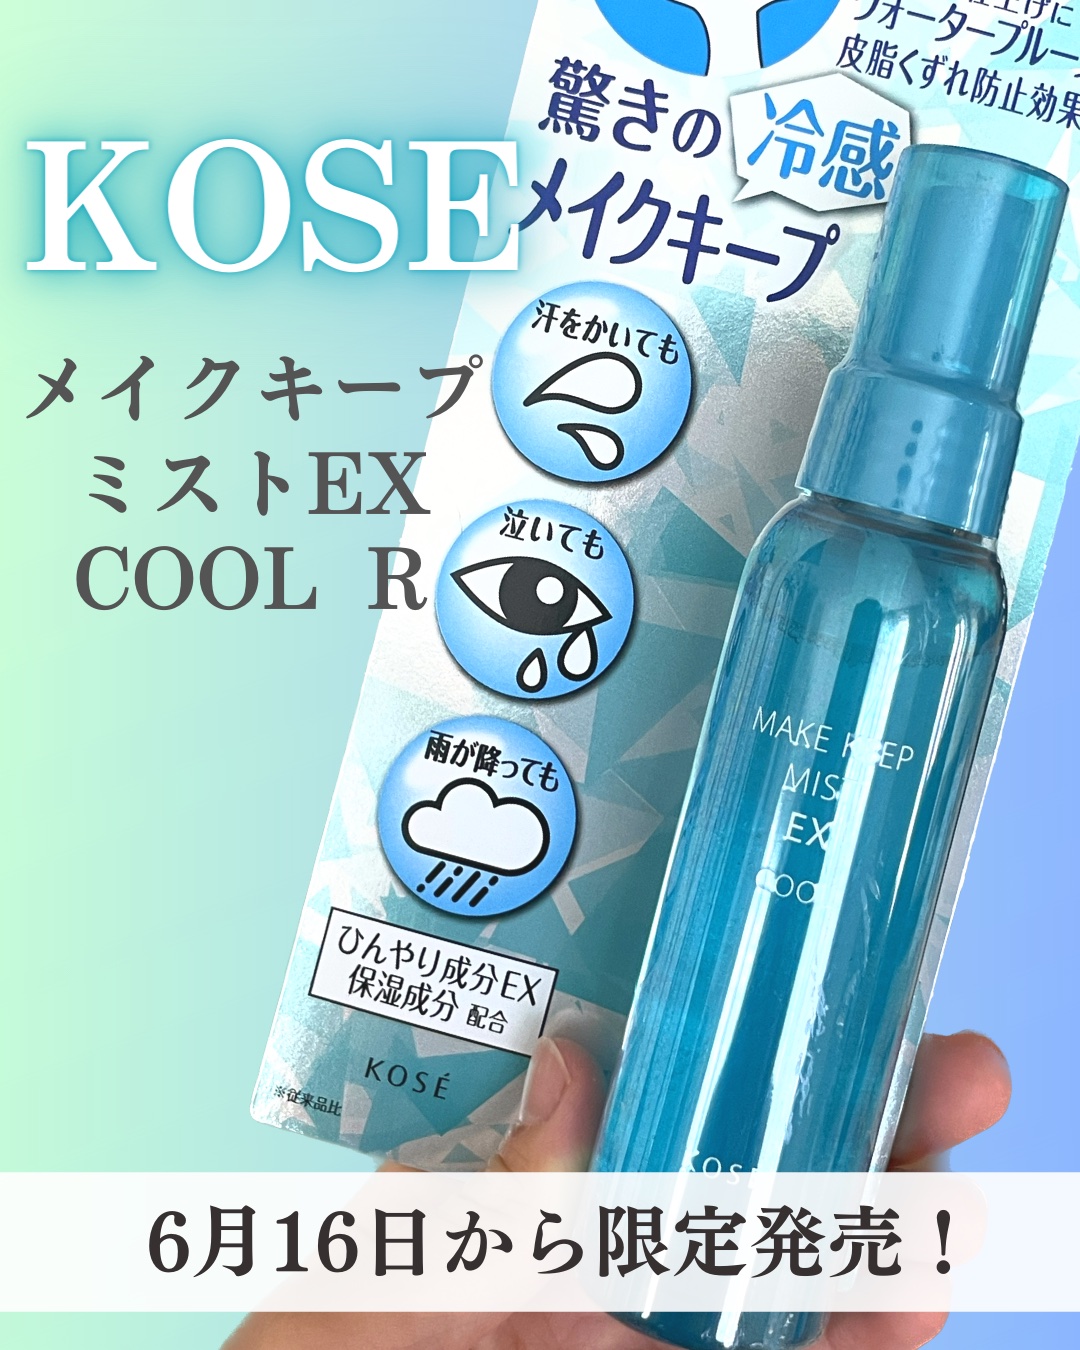 コーセー KOSE メイクキープミスト EX COOL R - 通販 -